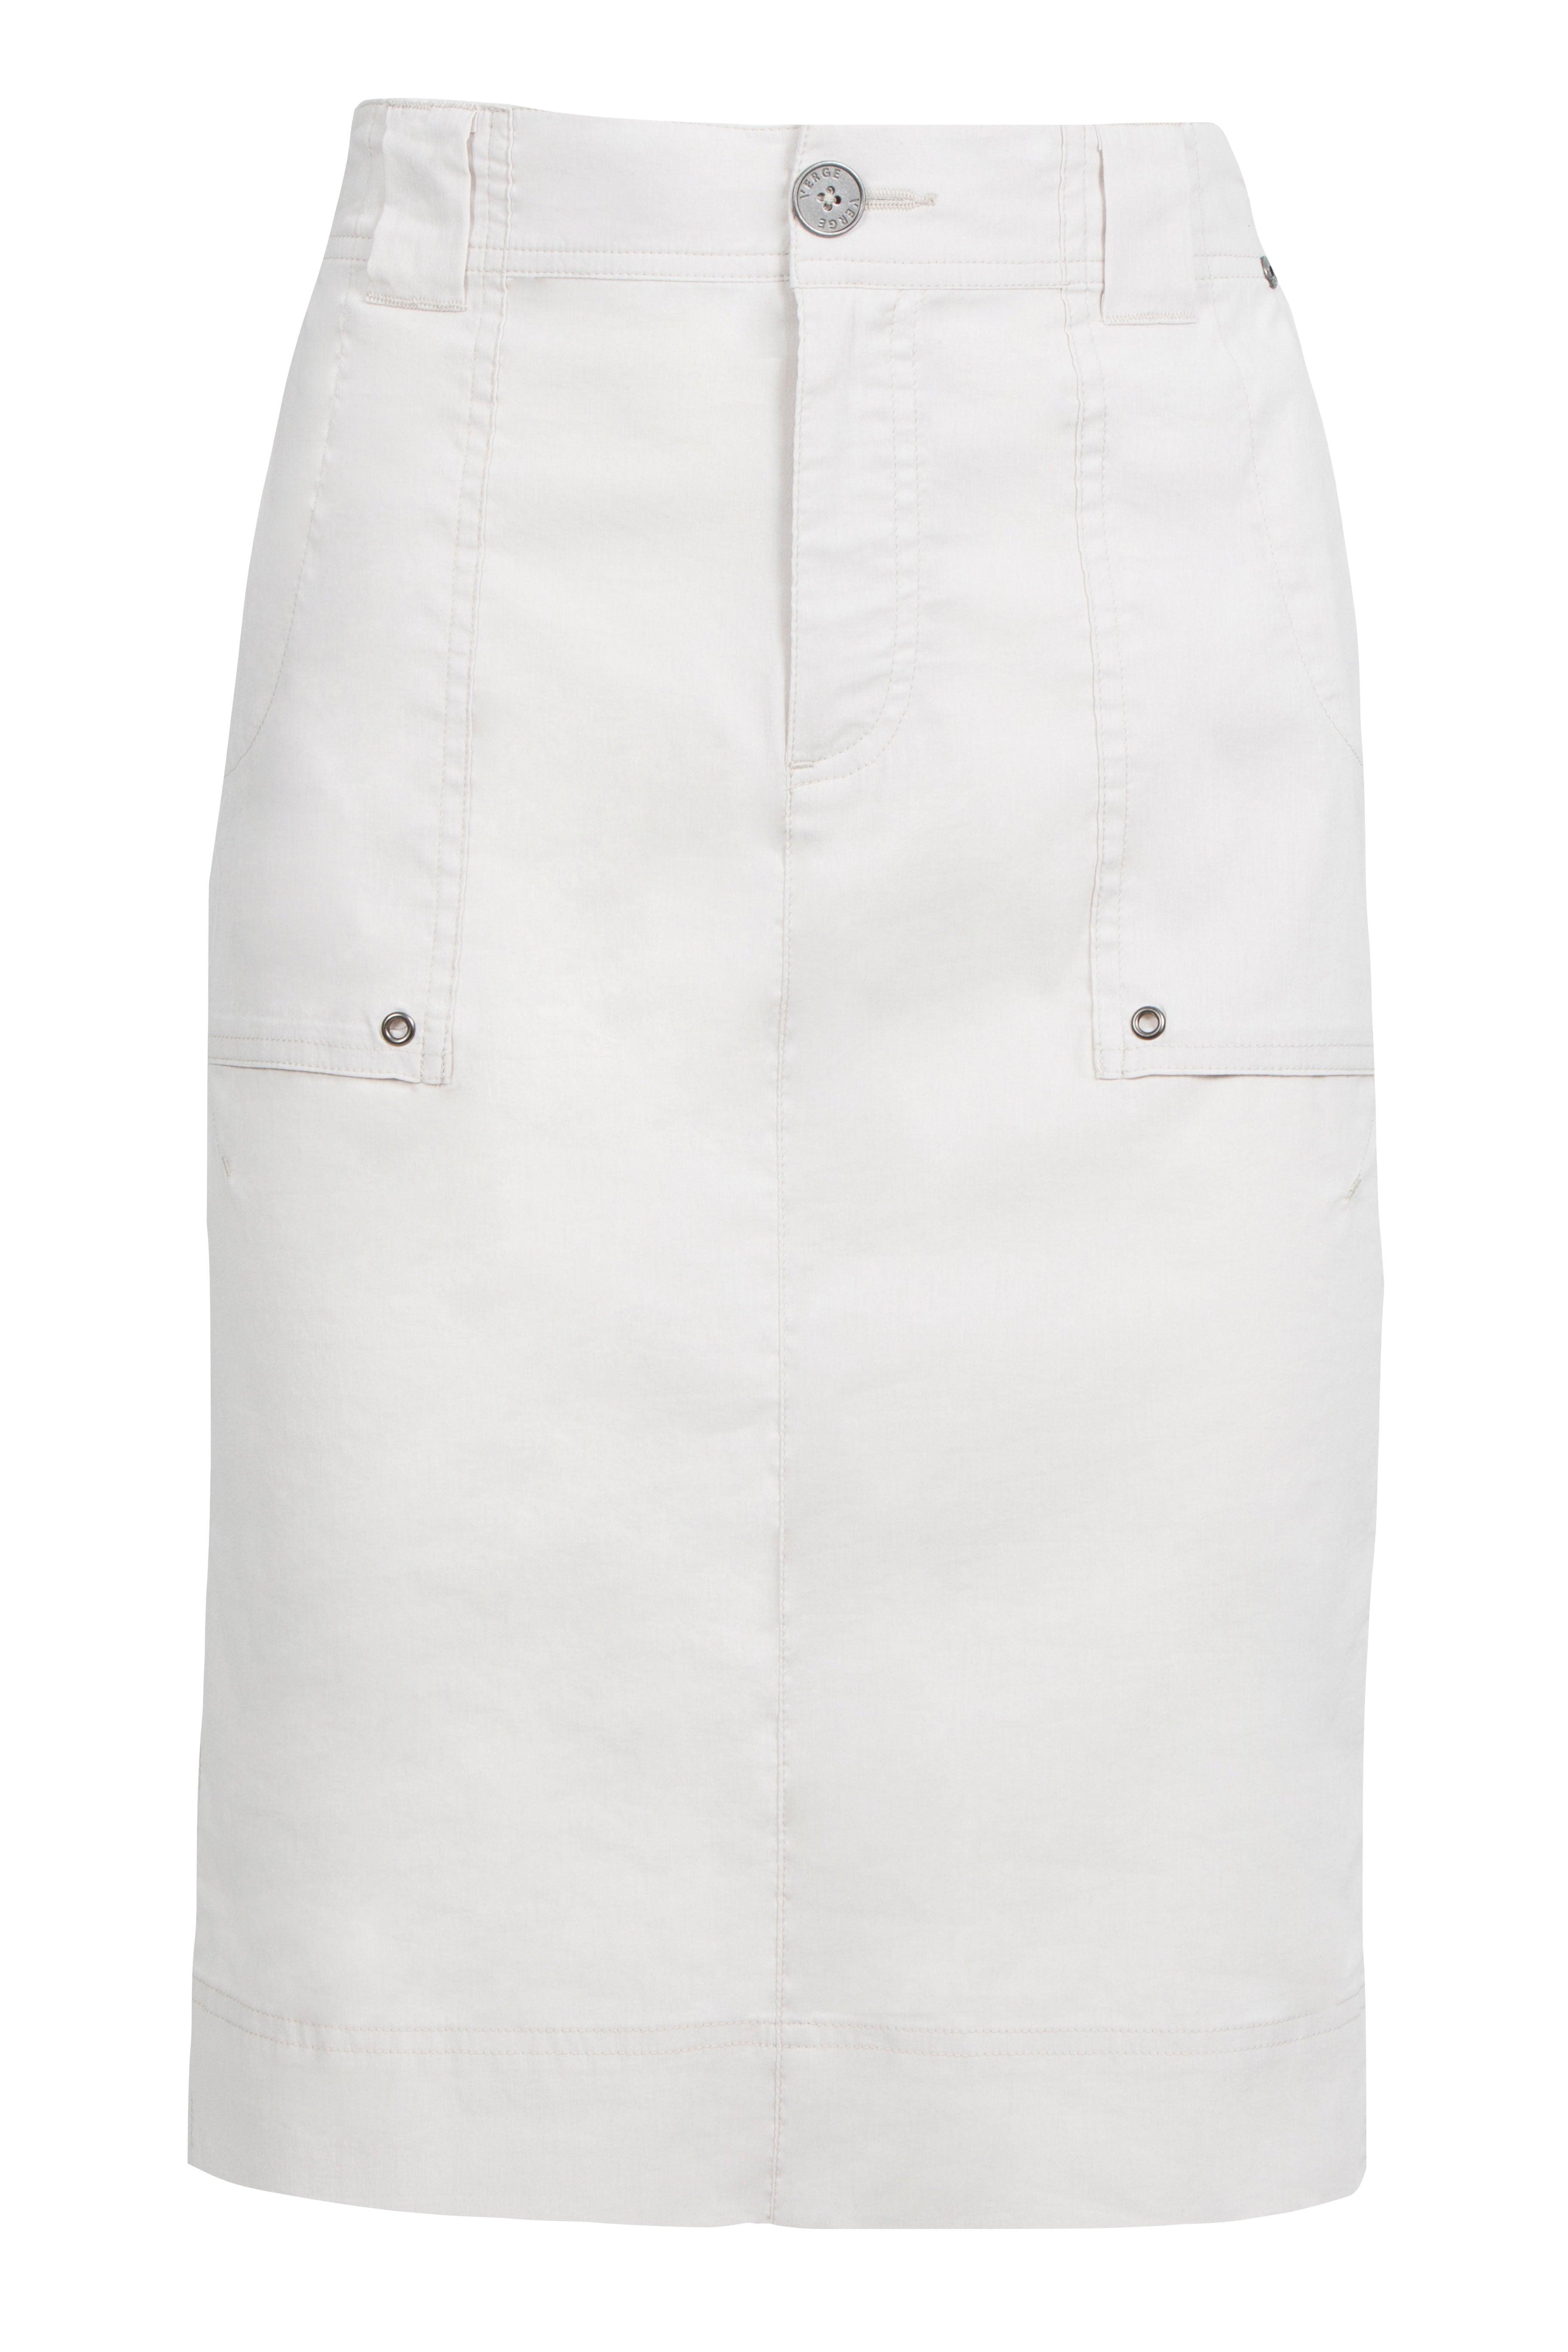 Acrobat Legion Skirt - White - Skirt VERGE